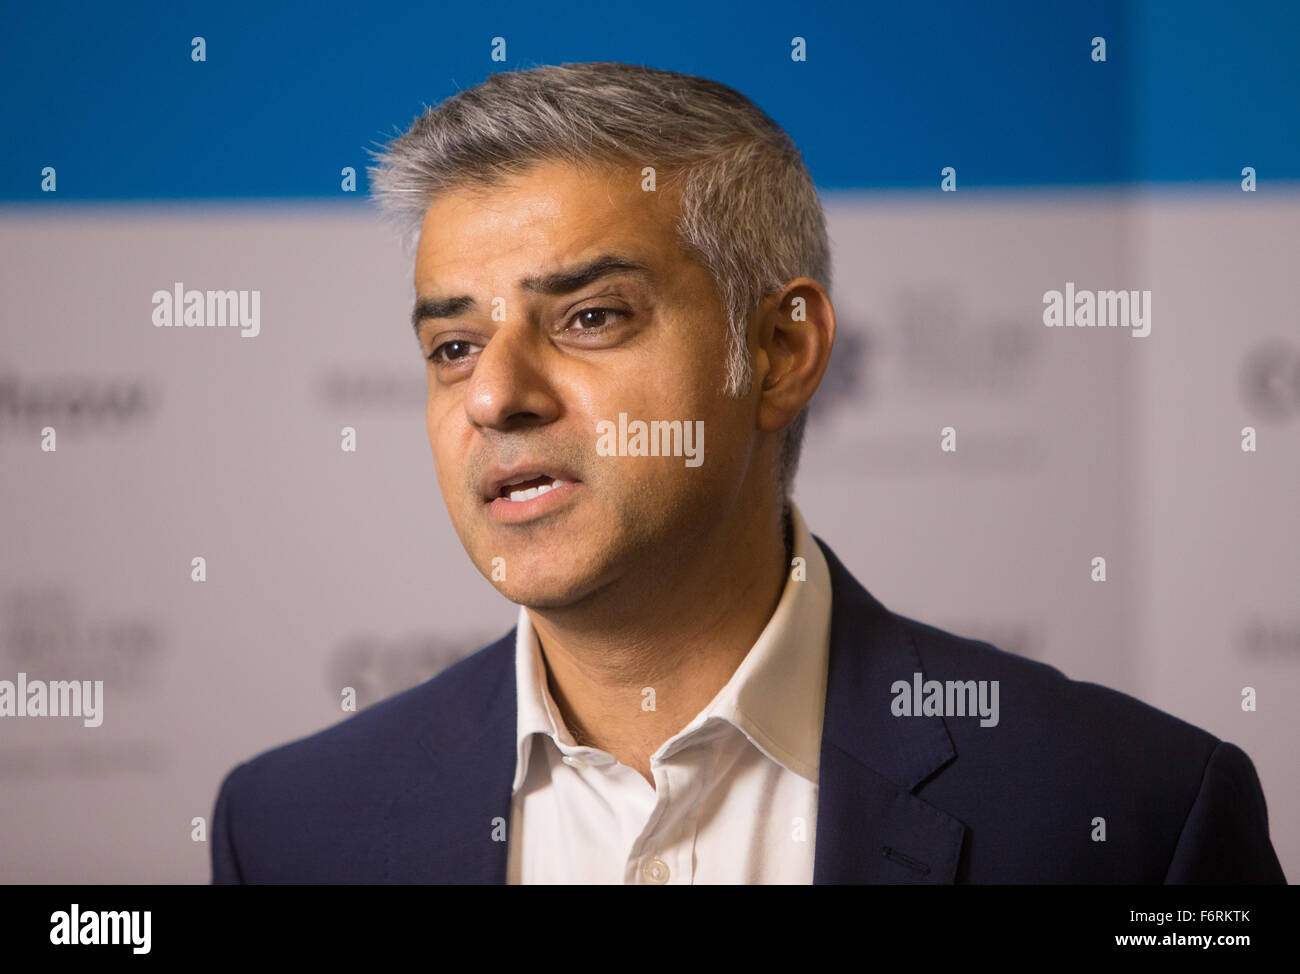 London Bürgermeisterkandidat für Labour, Sadiq Khan spricht bei einer Veranstaltung über seine Pläne für London, wenn gewählt Stockfoto